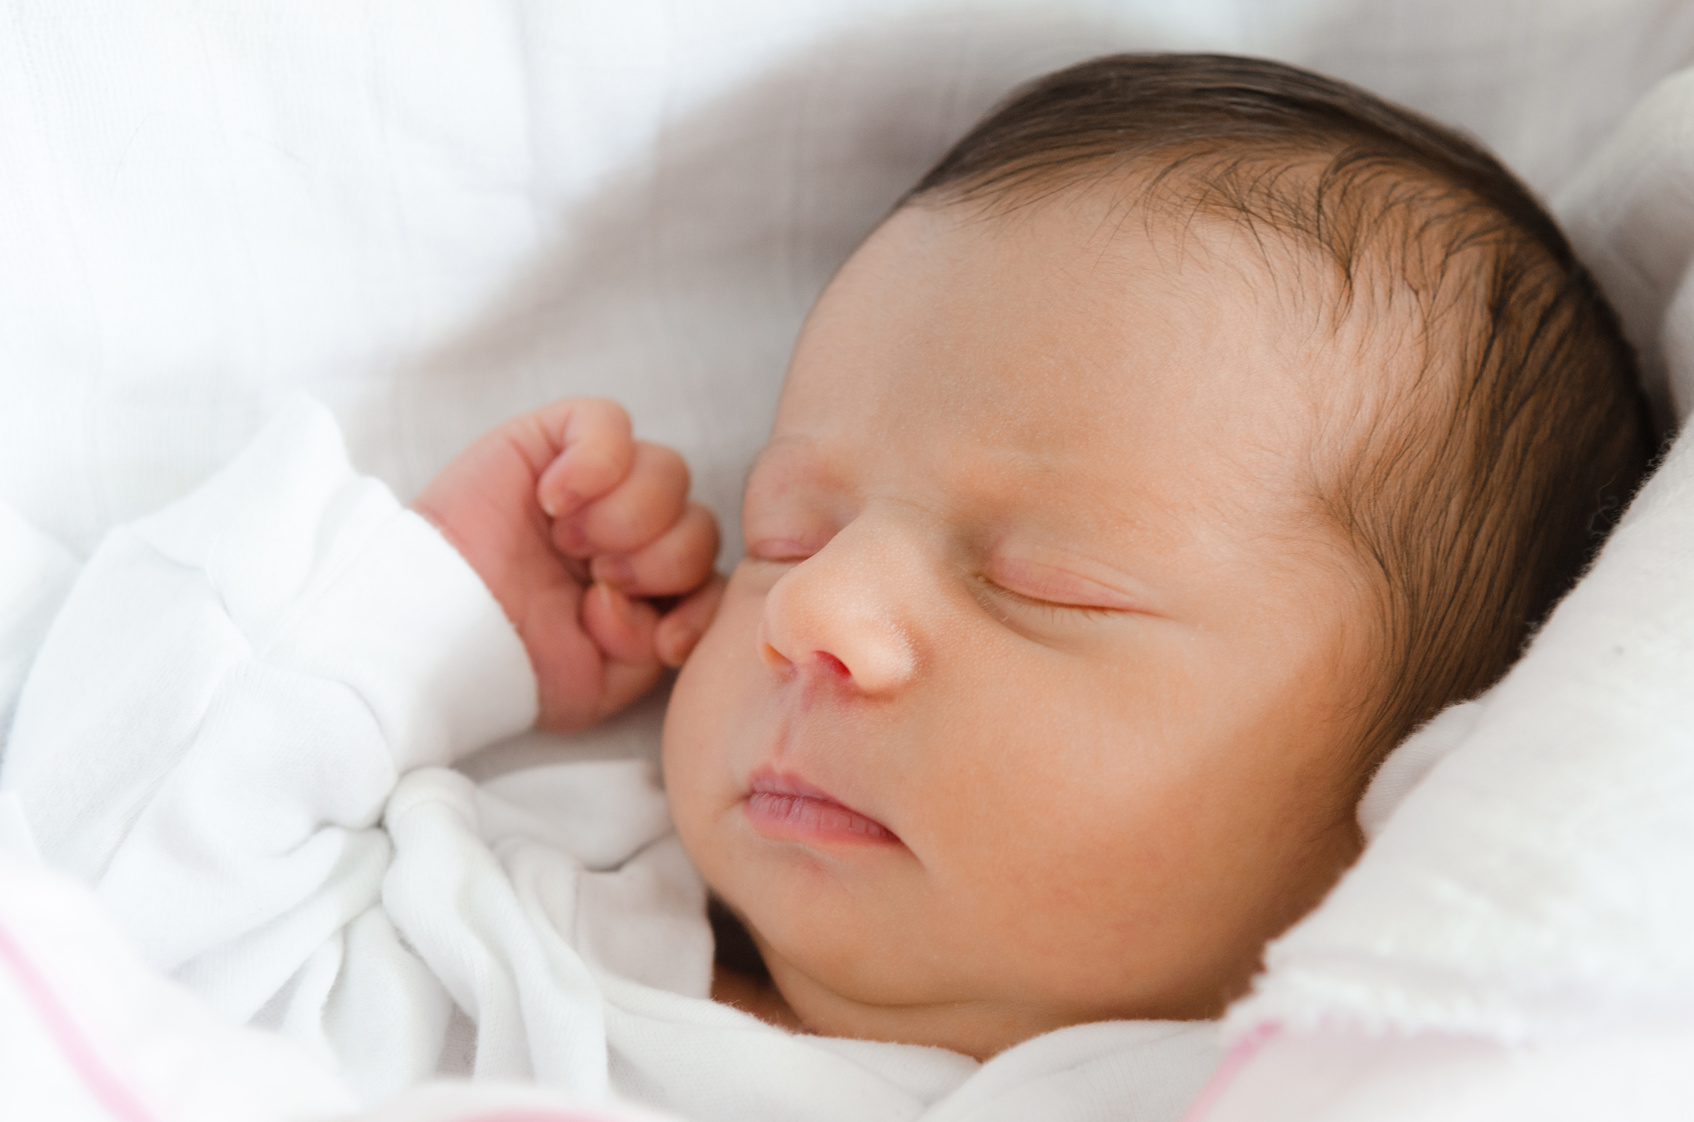 वैज्ञानिक भन्छन् : रोबटले यसरी बच्चा जन्माउन सक्छ